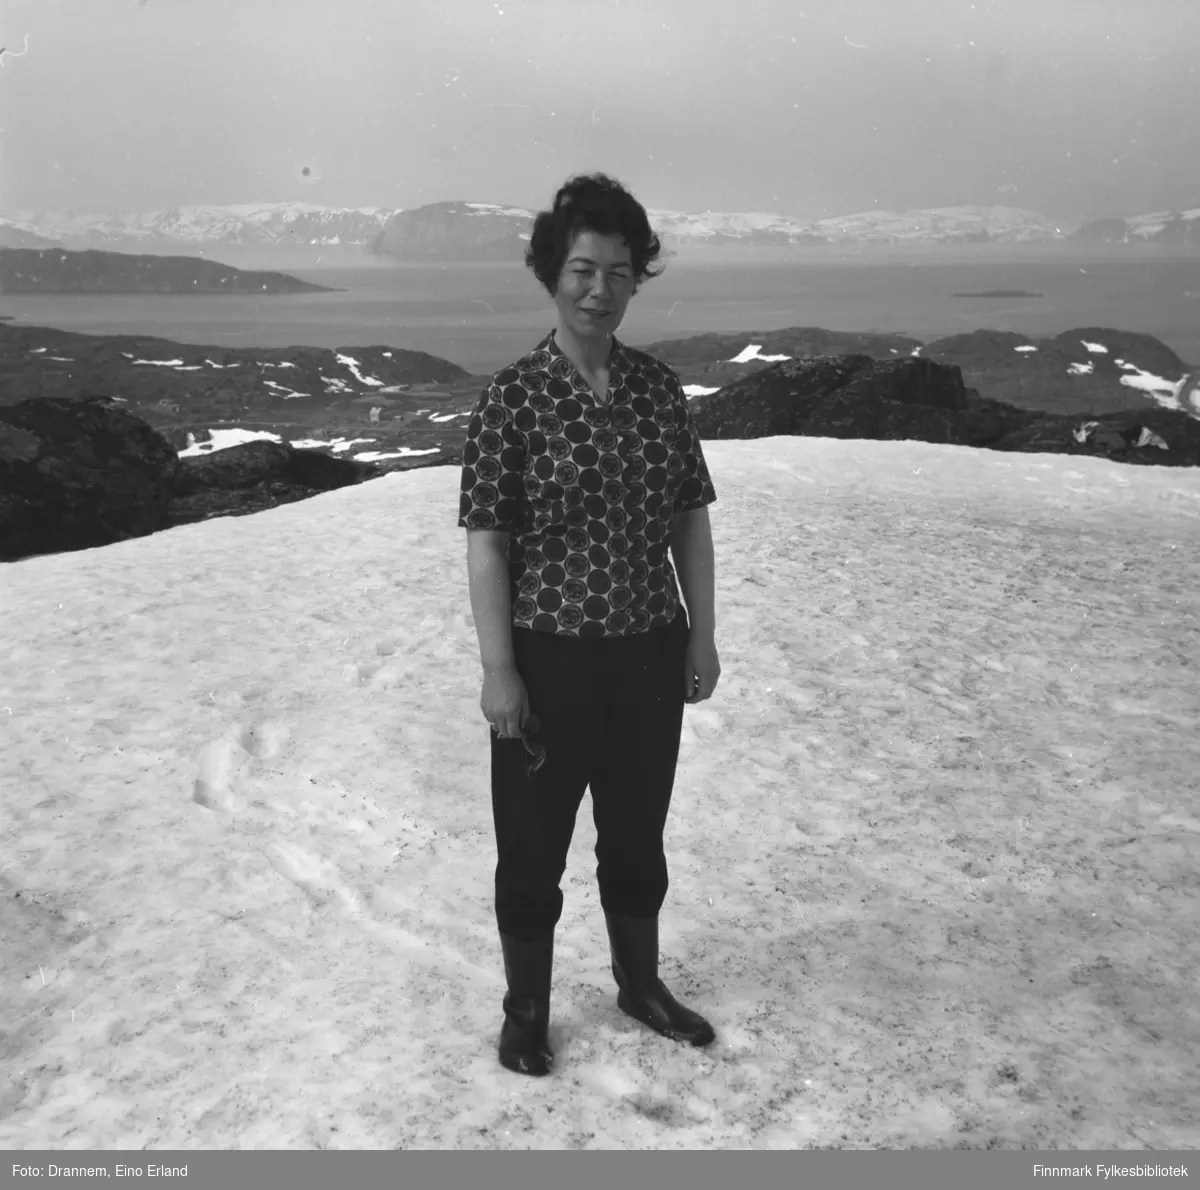 Jenny Drannem fotografert på et snødekt fjell. Terrenget tyder på at bildet er tatt på Kvaløya utenfor Hammerfest.